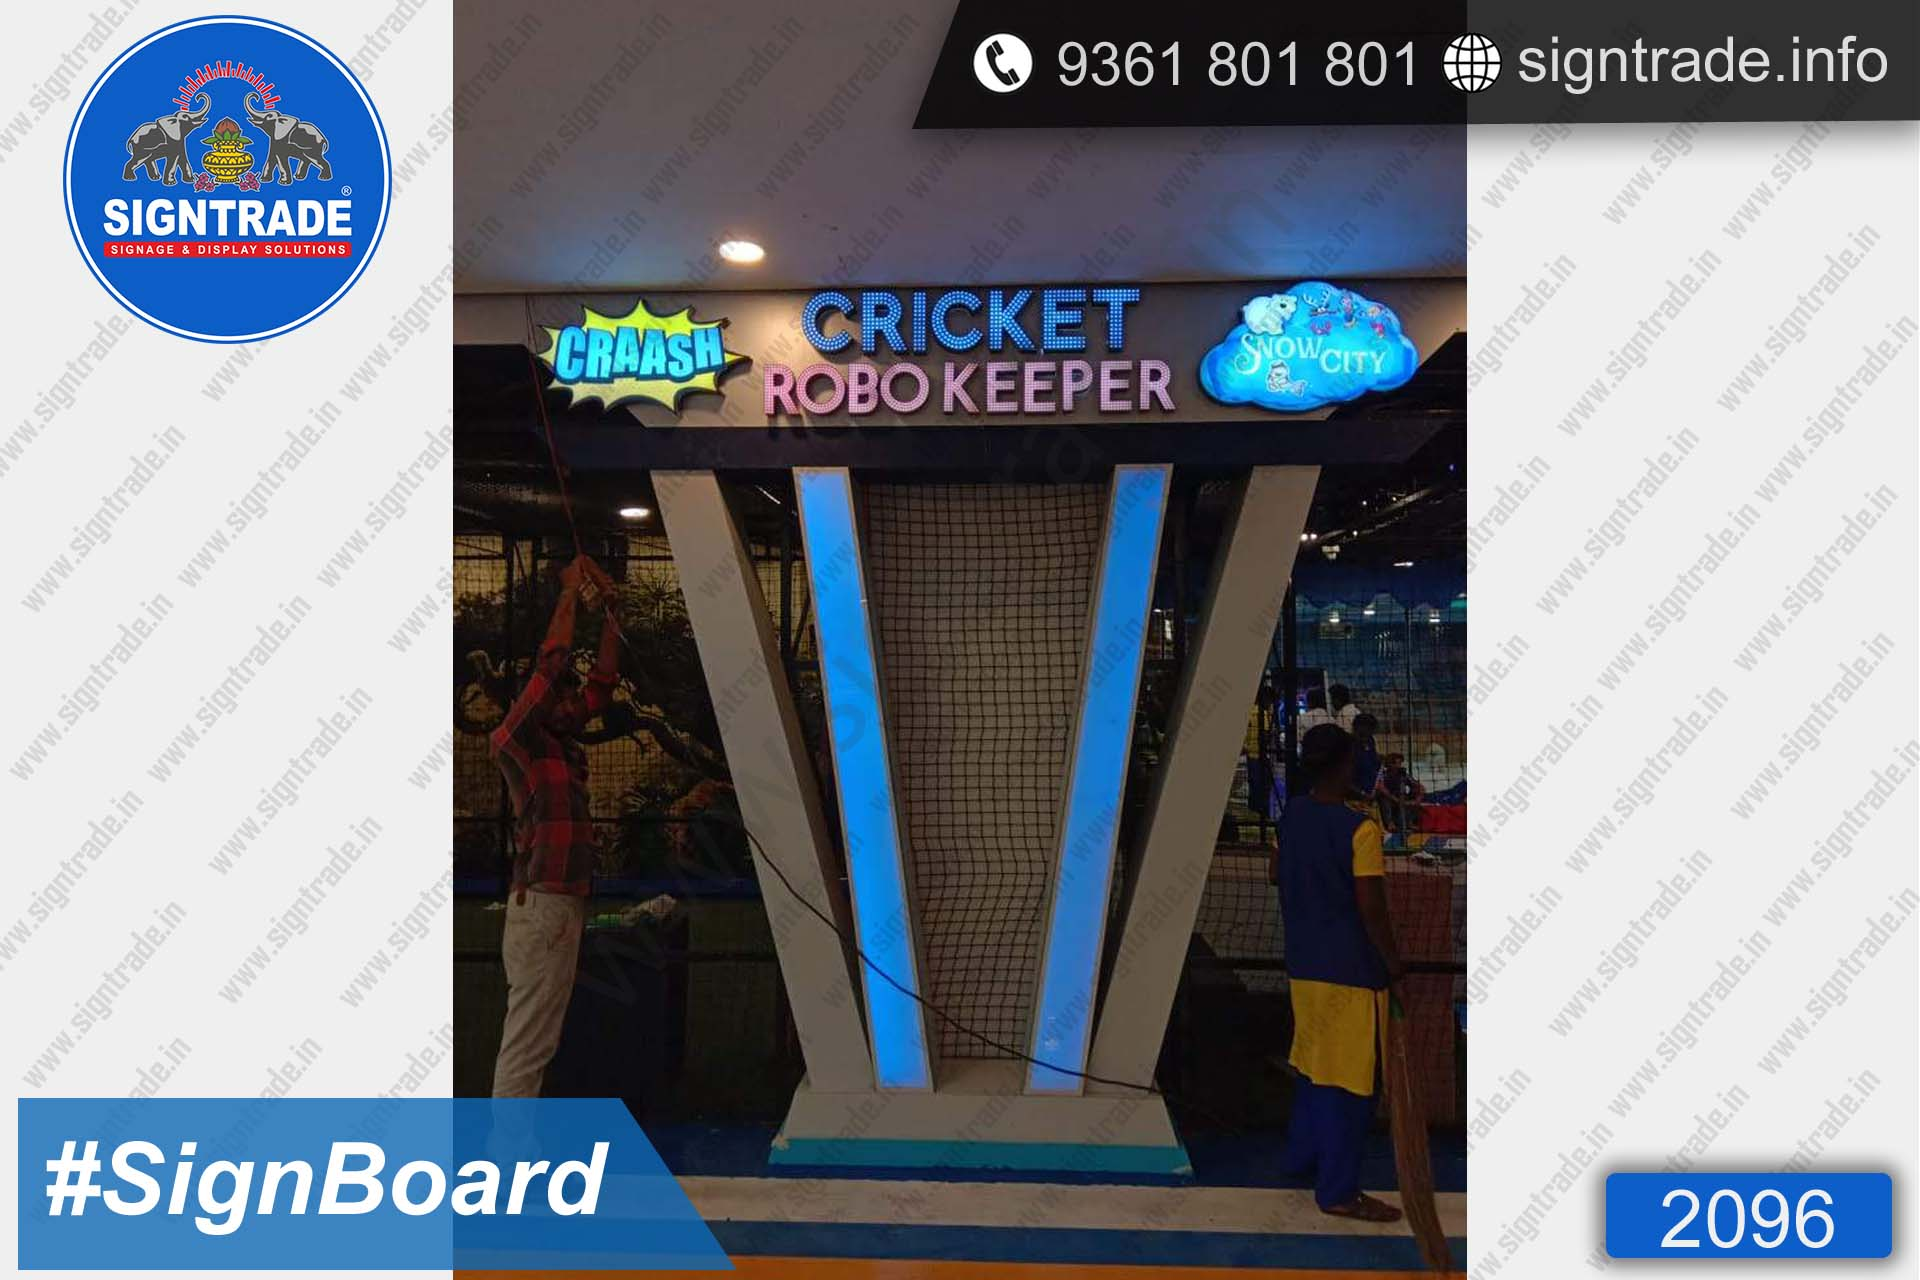 Cricket Robokeeper SIgn Board